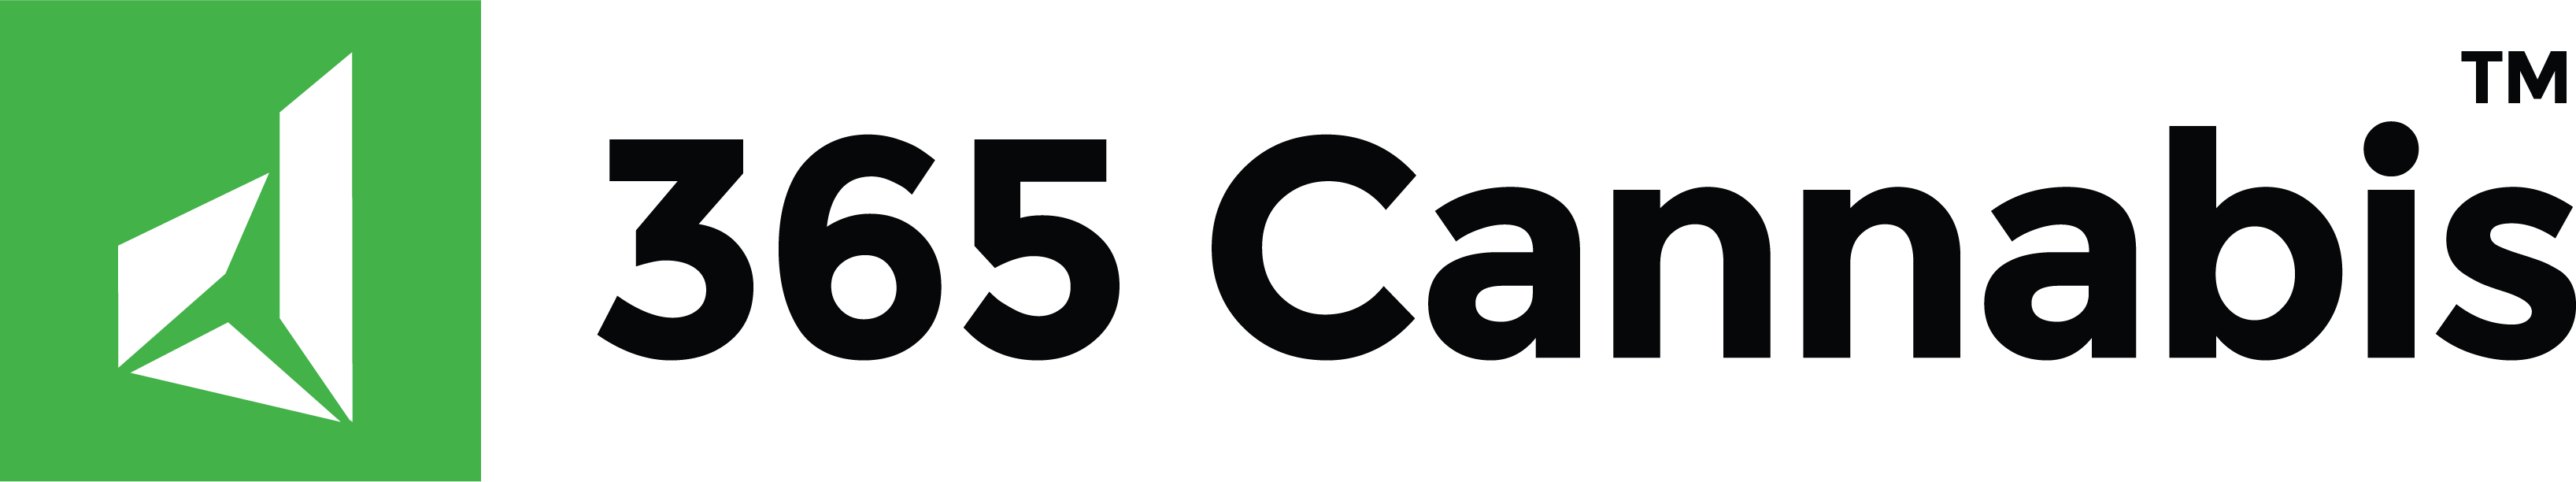 365 Cannabis Logo.png